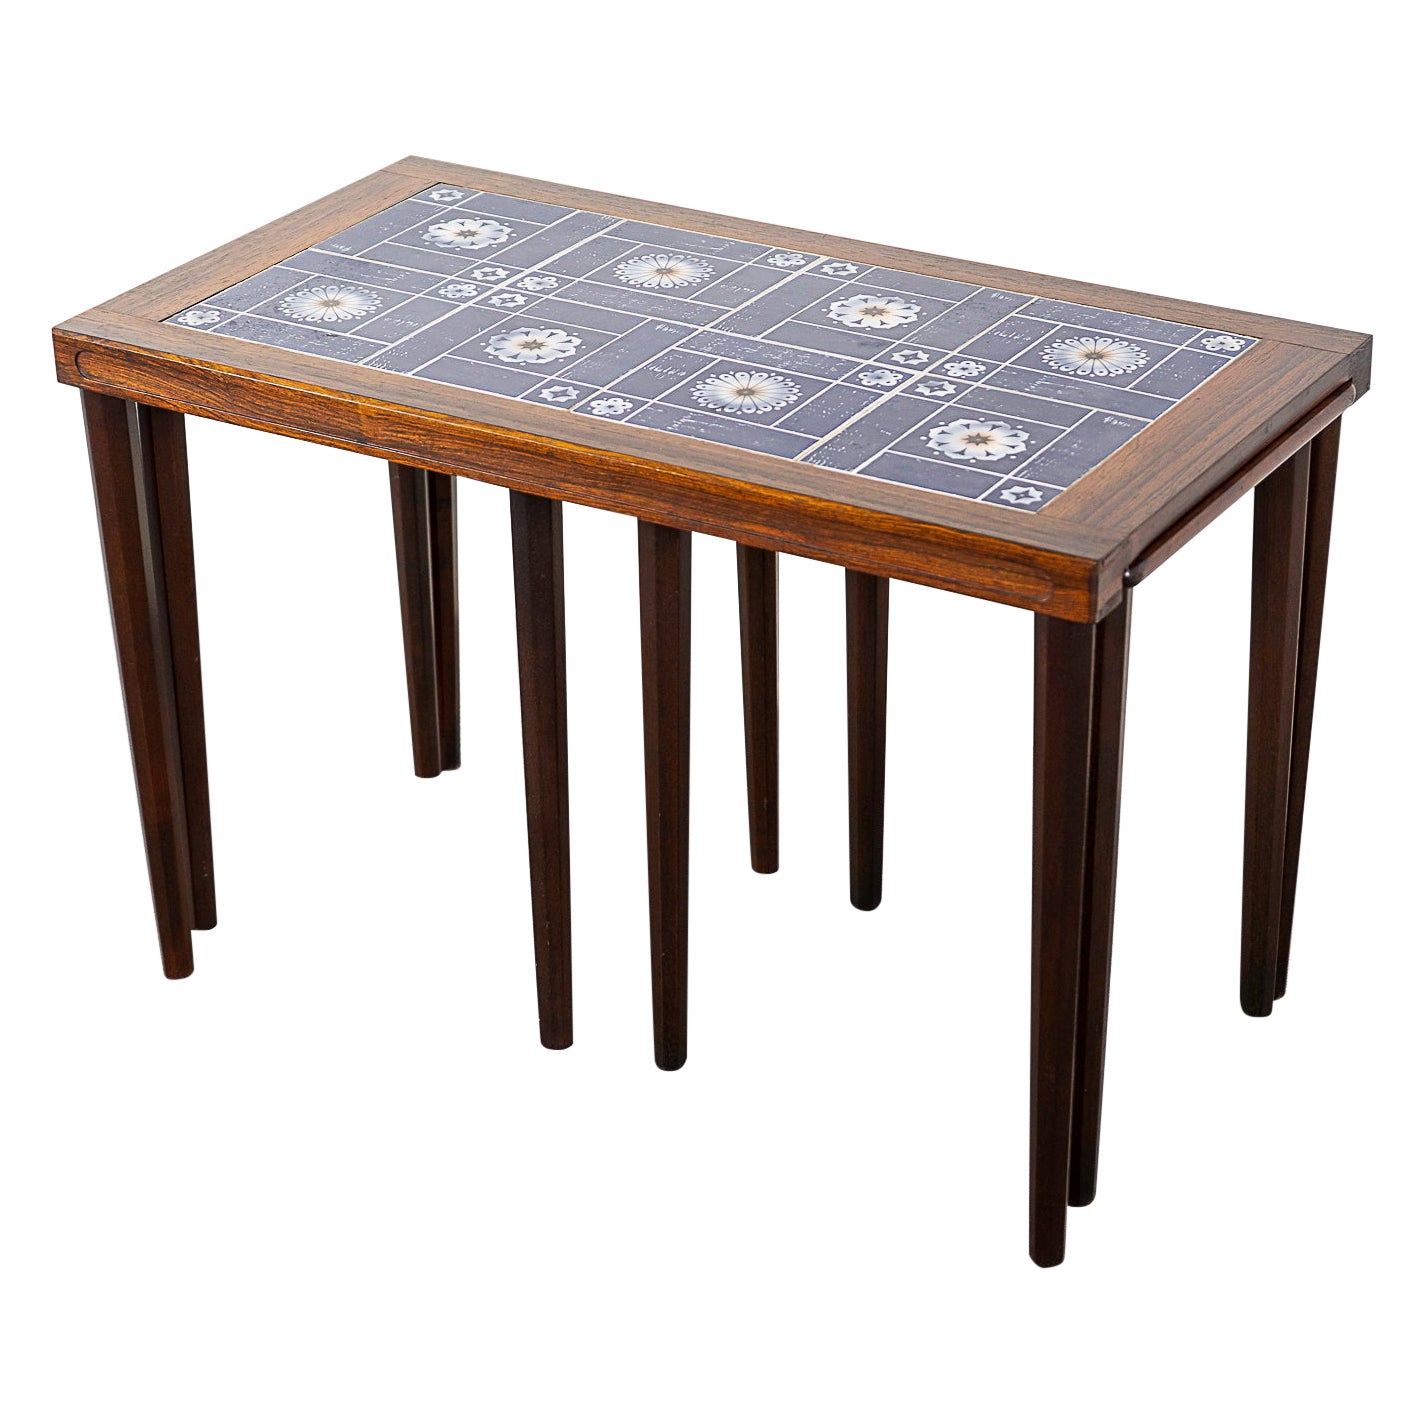 Danish Modern Rosewood & Tile Nesting Tables